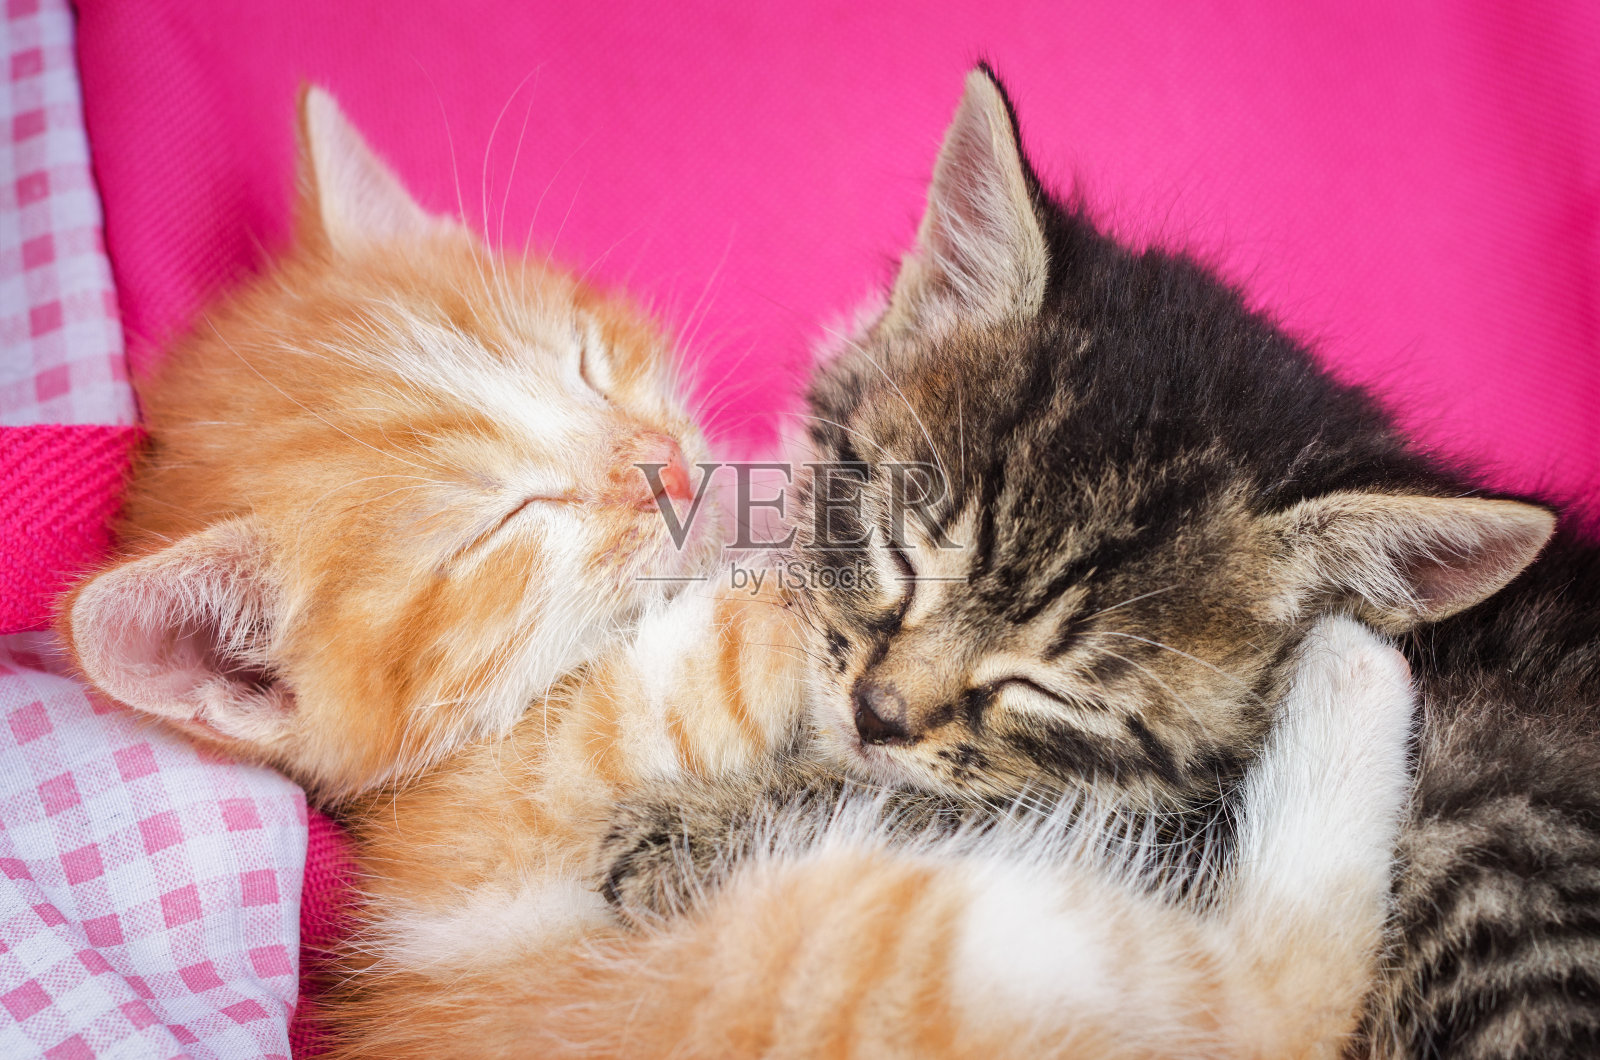 两睡觉小小猫 库存照片. 图片 包括有 工作室, 位于, 纯血统, 夫妇, 平静, 一起, 少许, 敌意 - 35689864